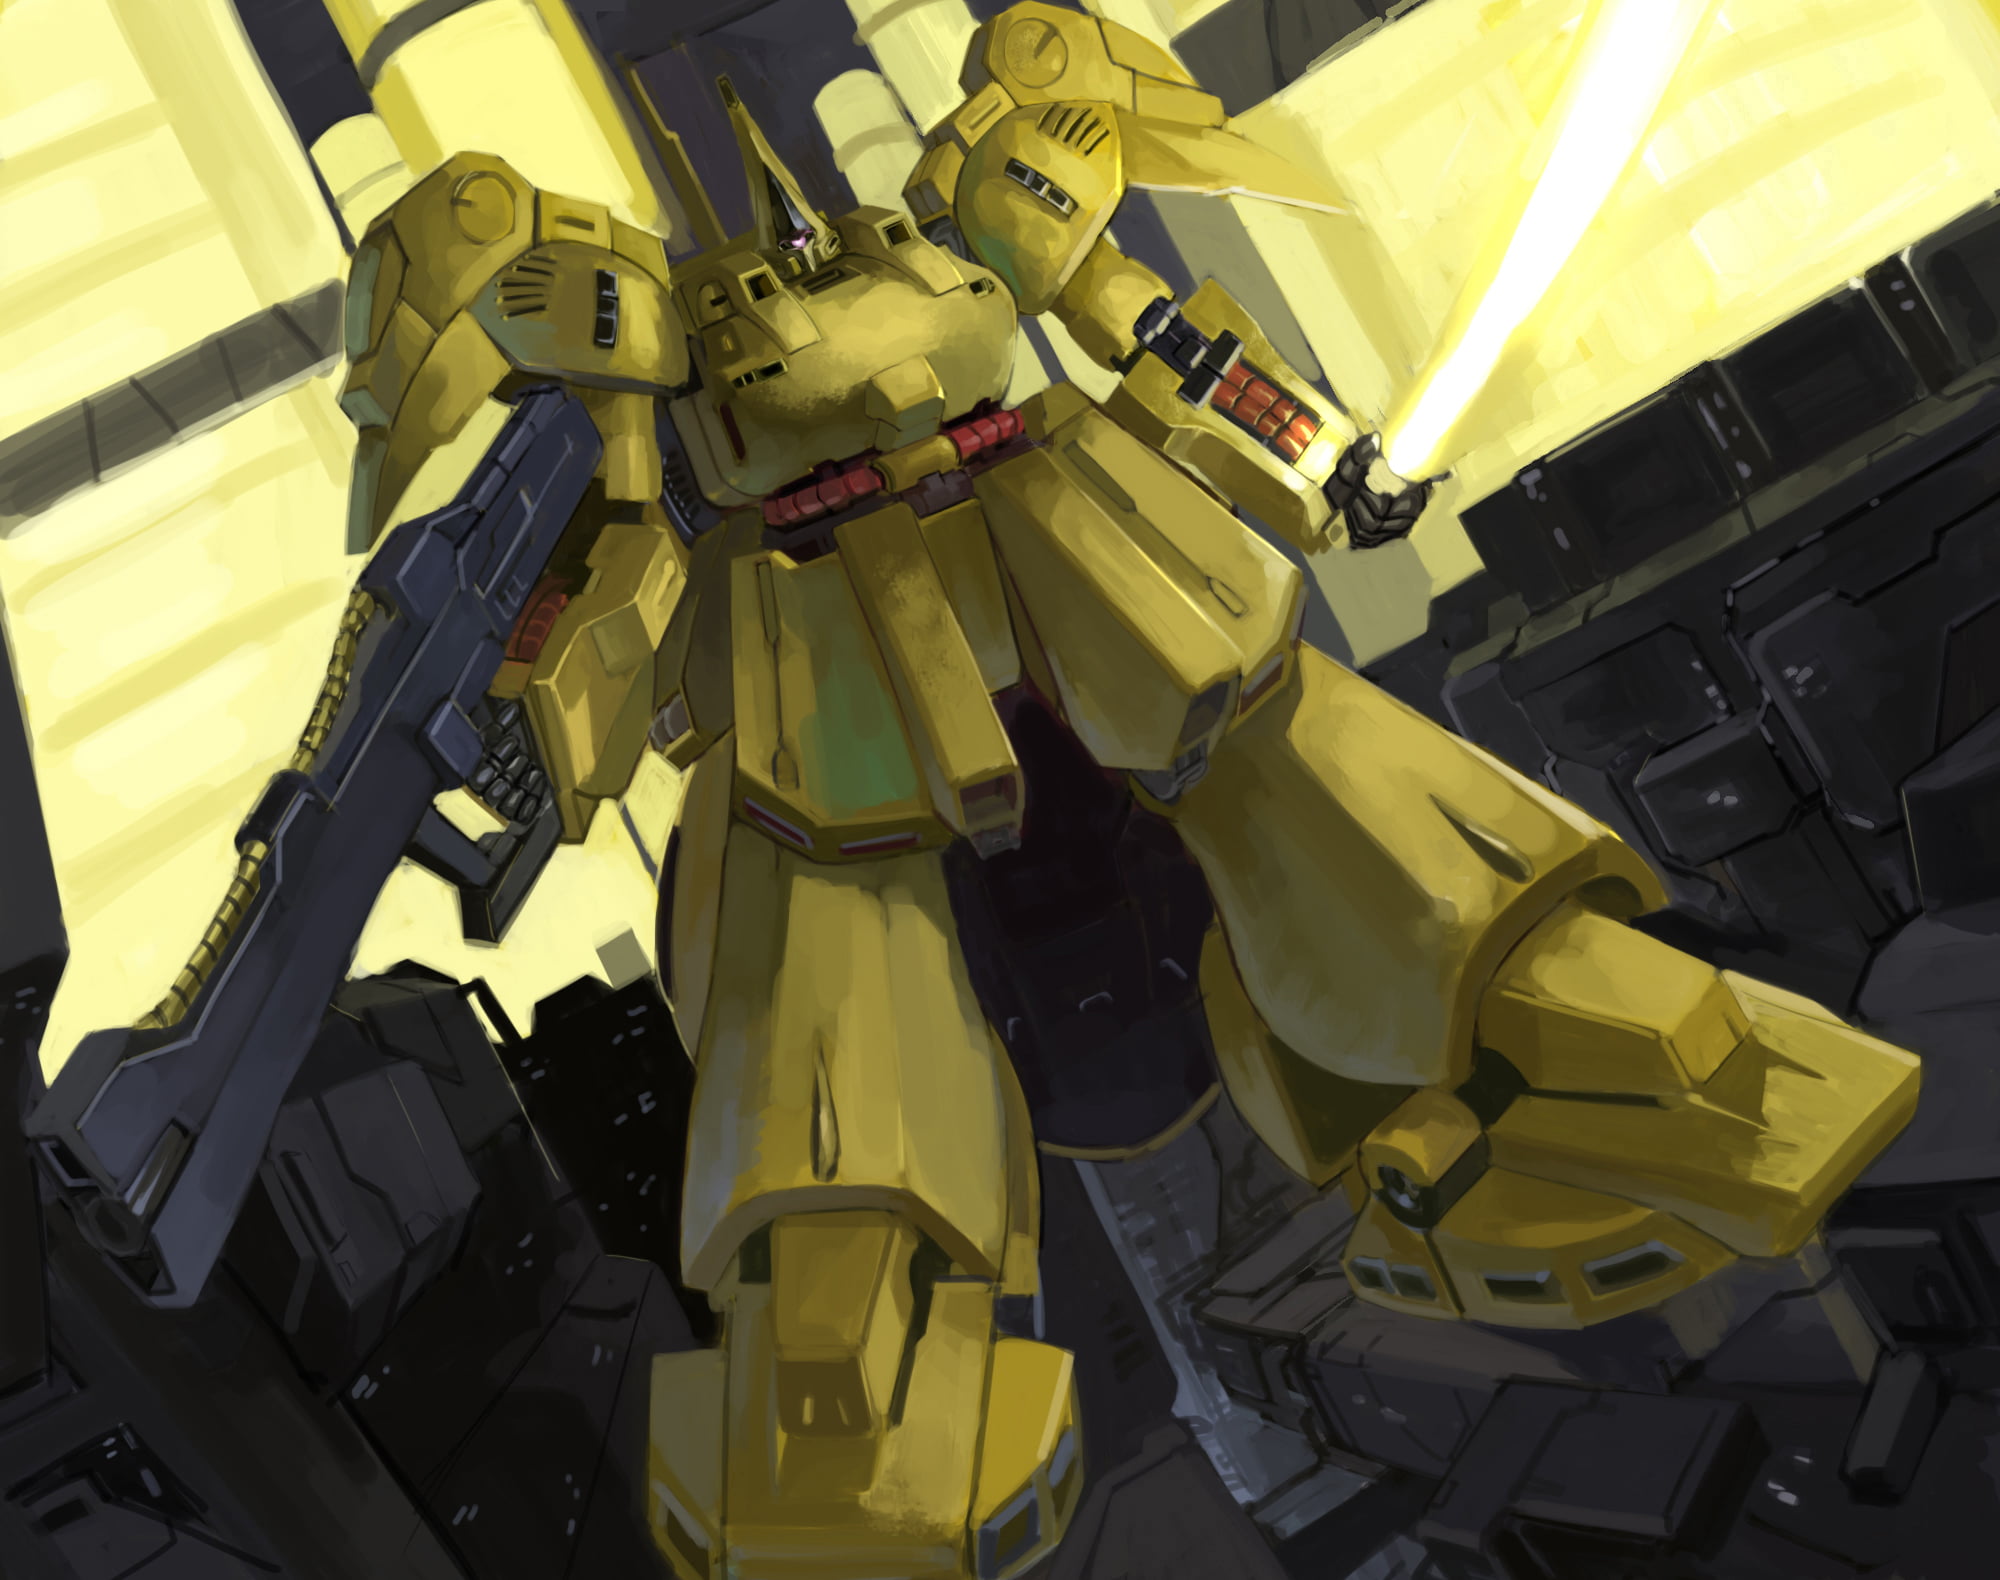 The-O, Mobile Suit Zeta Gundam, anime, mechs, Super Robot Taisen